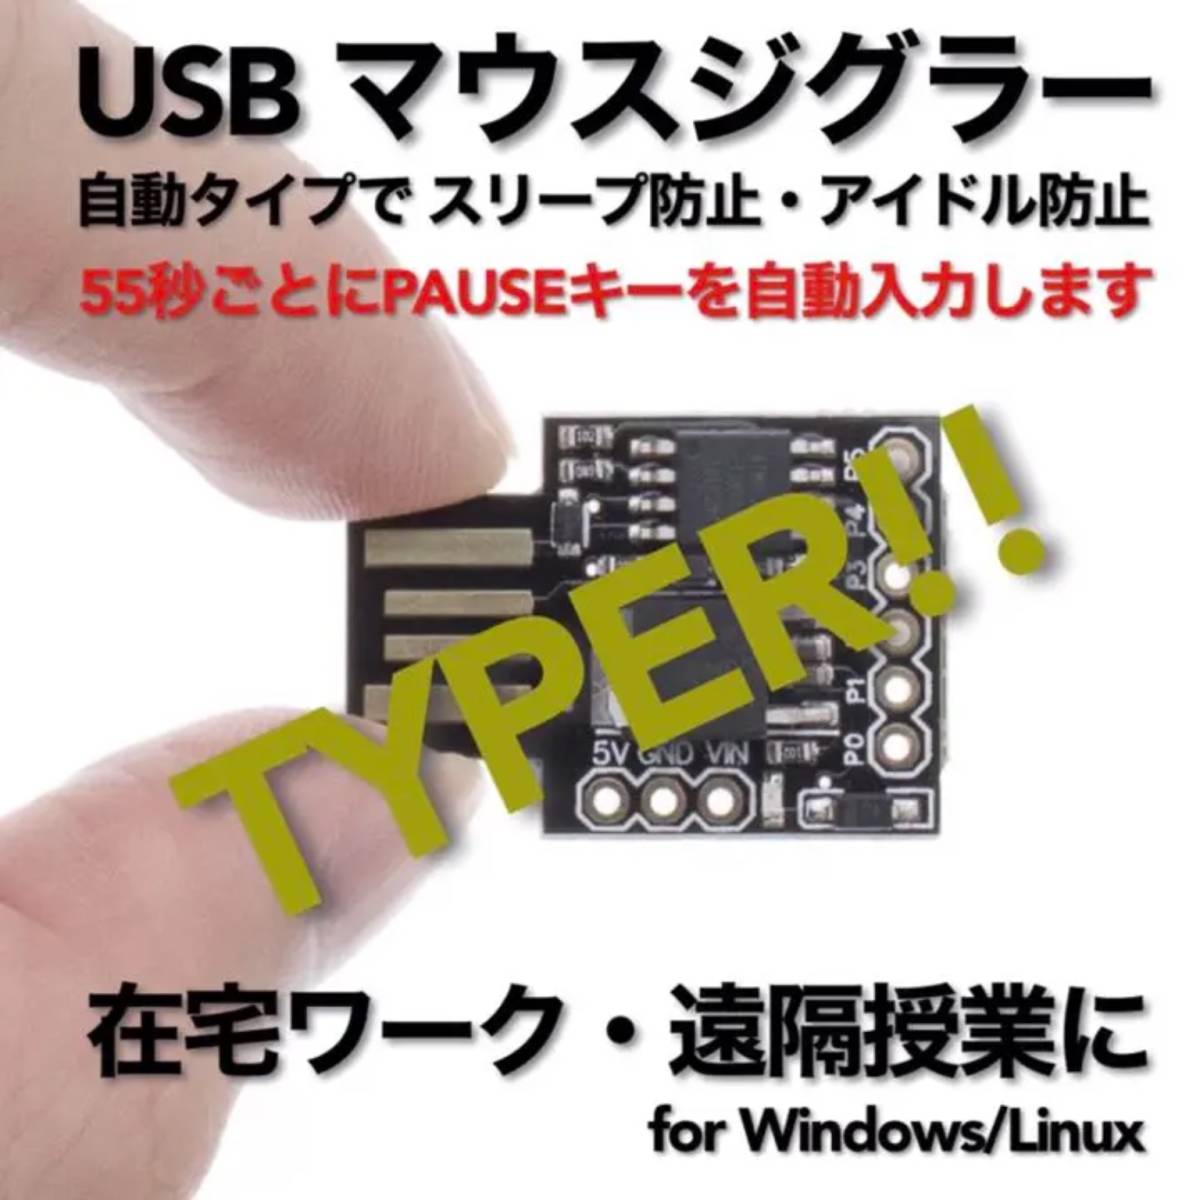 USB マウスジグラー TYPER!! スクリーンセーバーキラー #1 在宅勤務 テレワーク 遠隔授業 Mouse Jiggler Mover_画像1